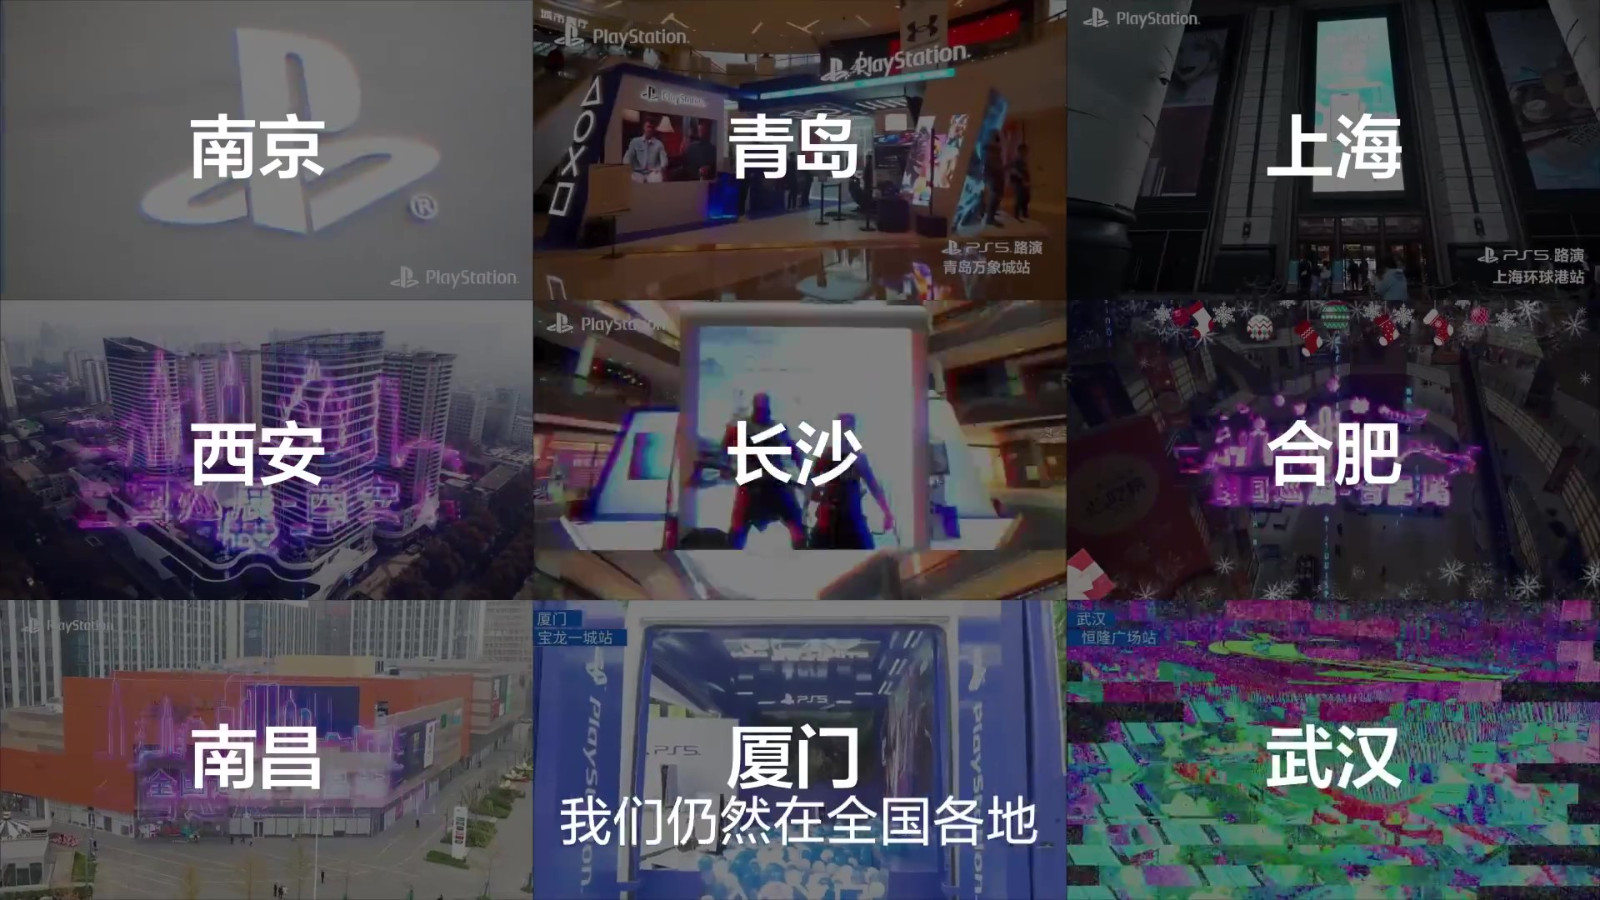 PlayStation5国行上市两周年 江口达雄出镜感谢中国玩家 二次世界 第5张